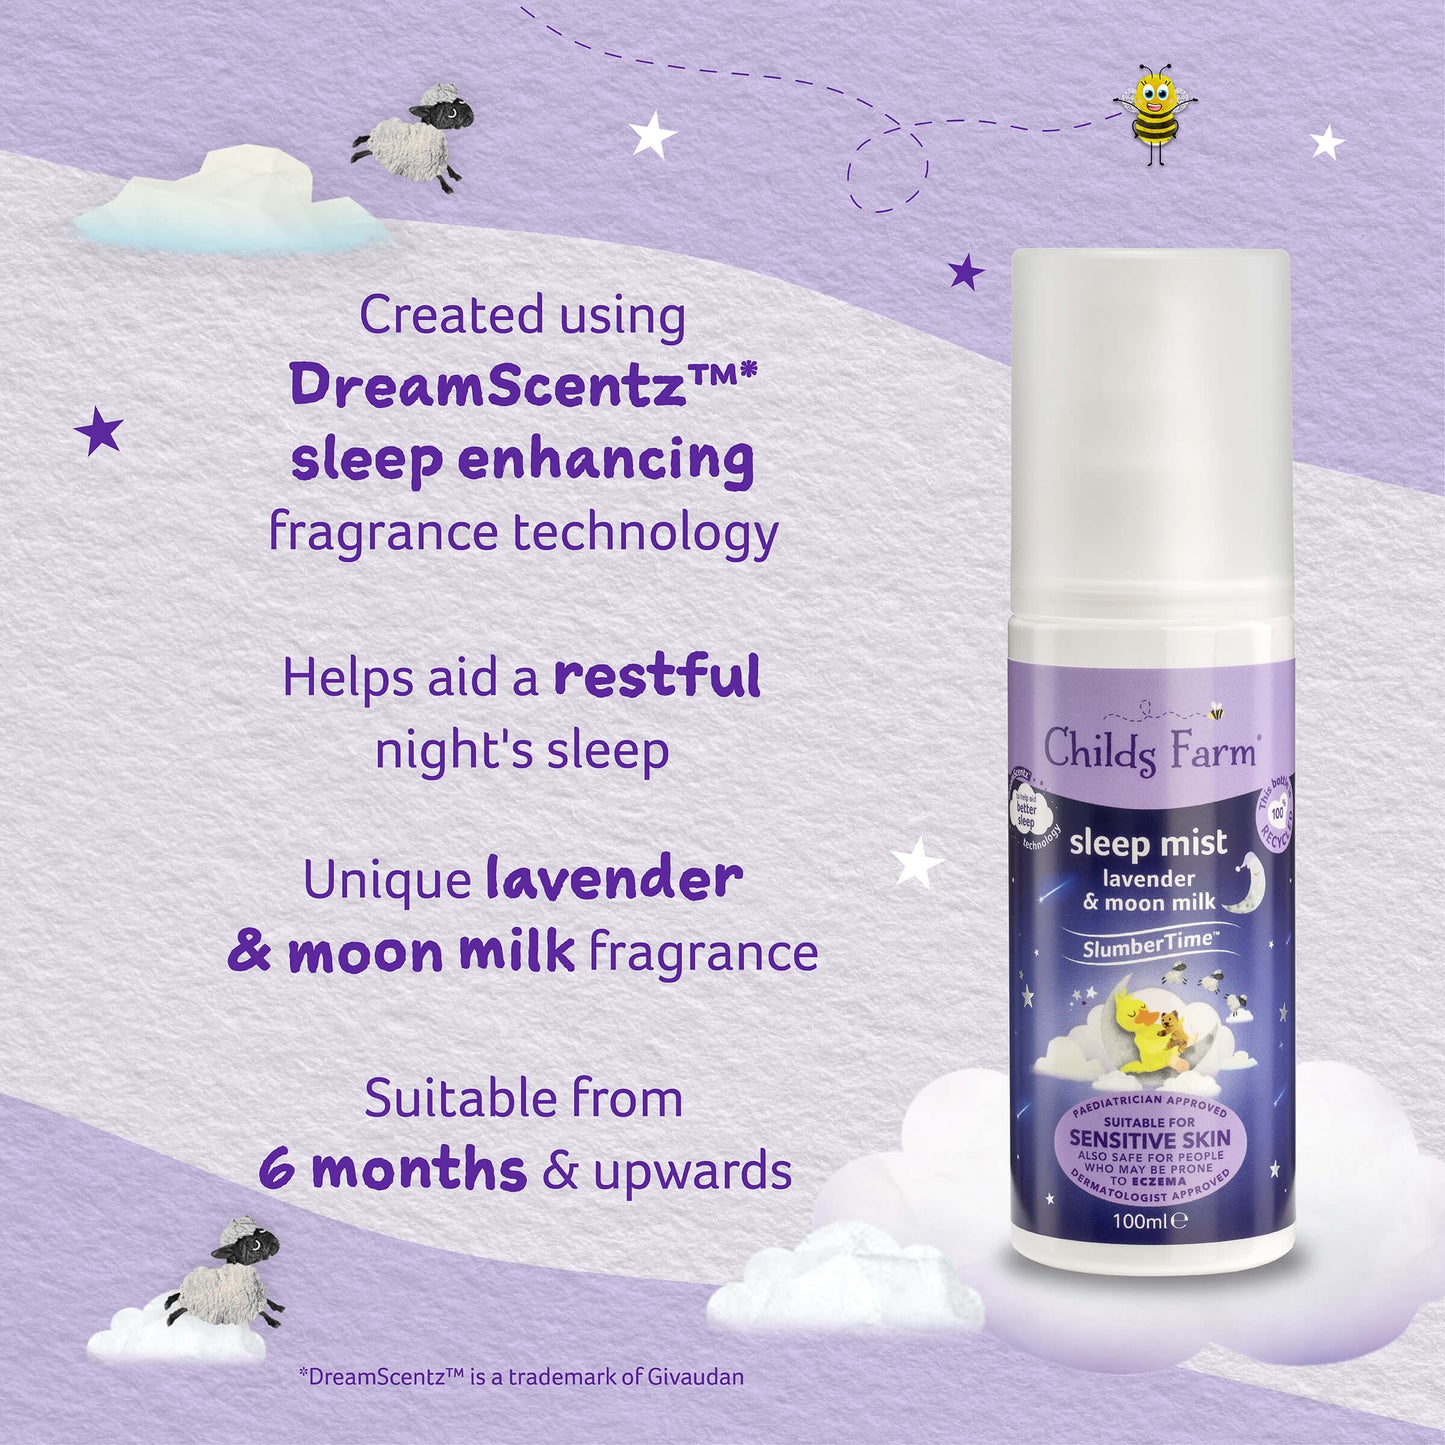 Childs Farm SlumberTime™ sleep mist lavender & moon milk